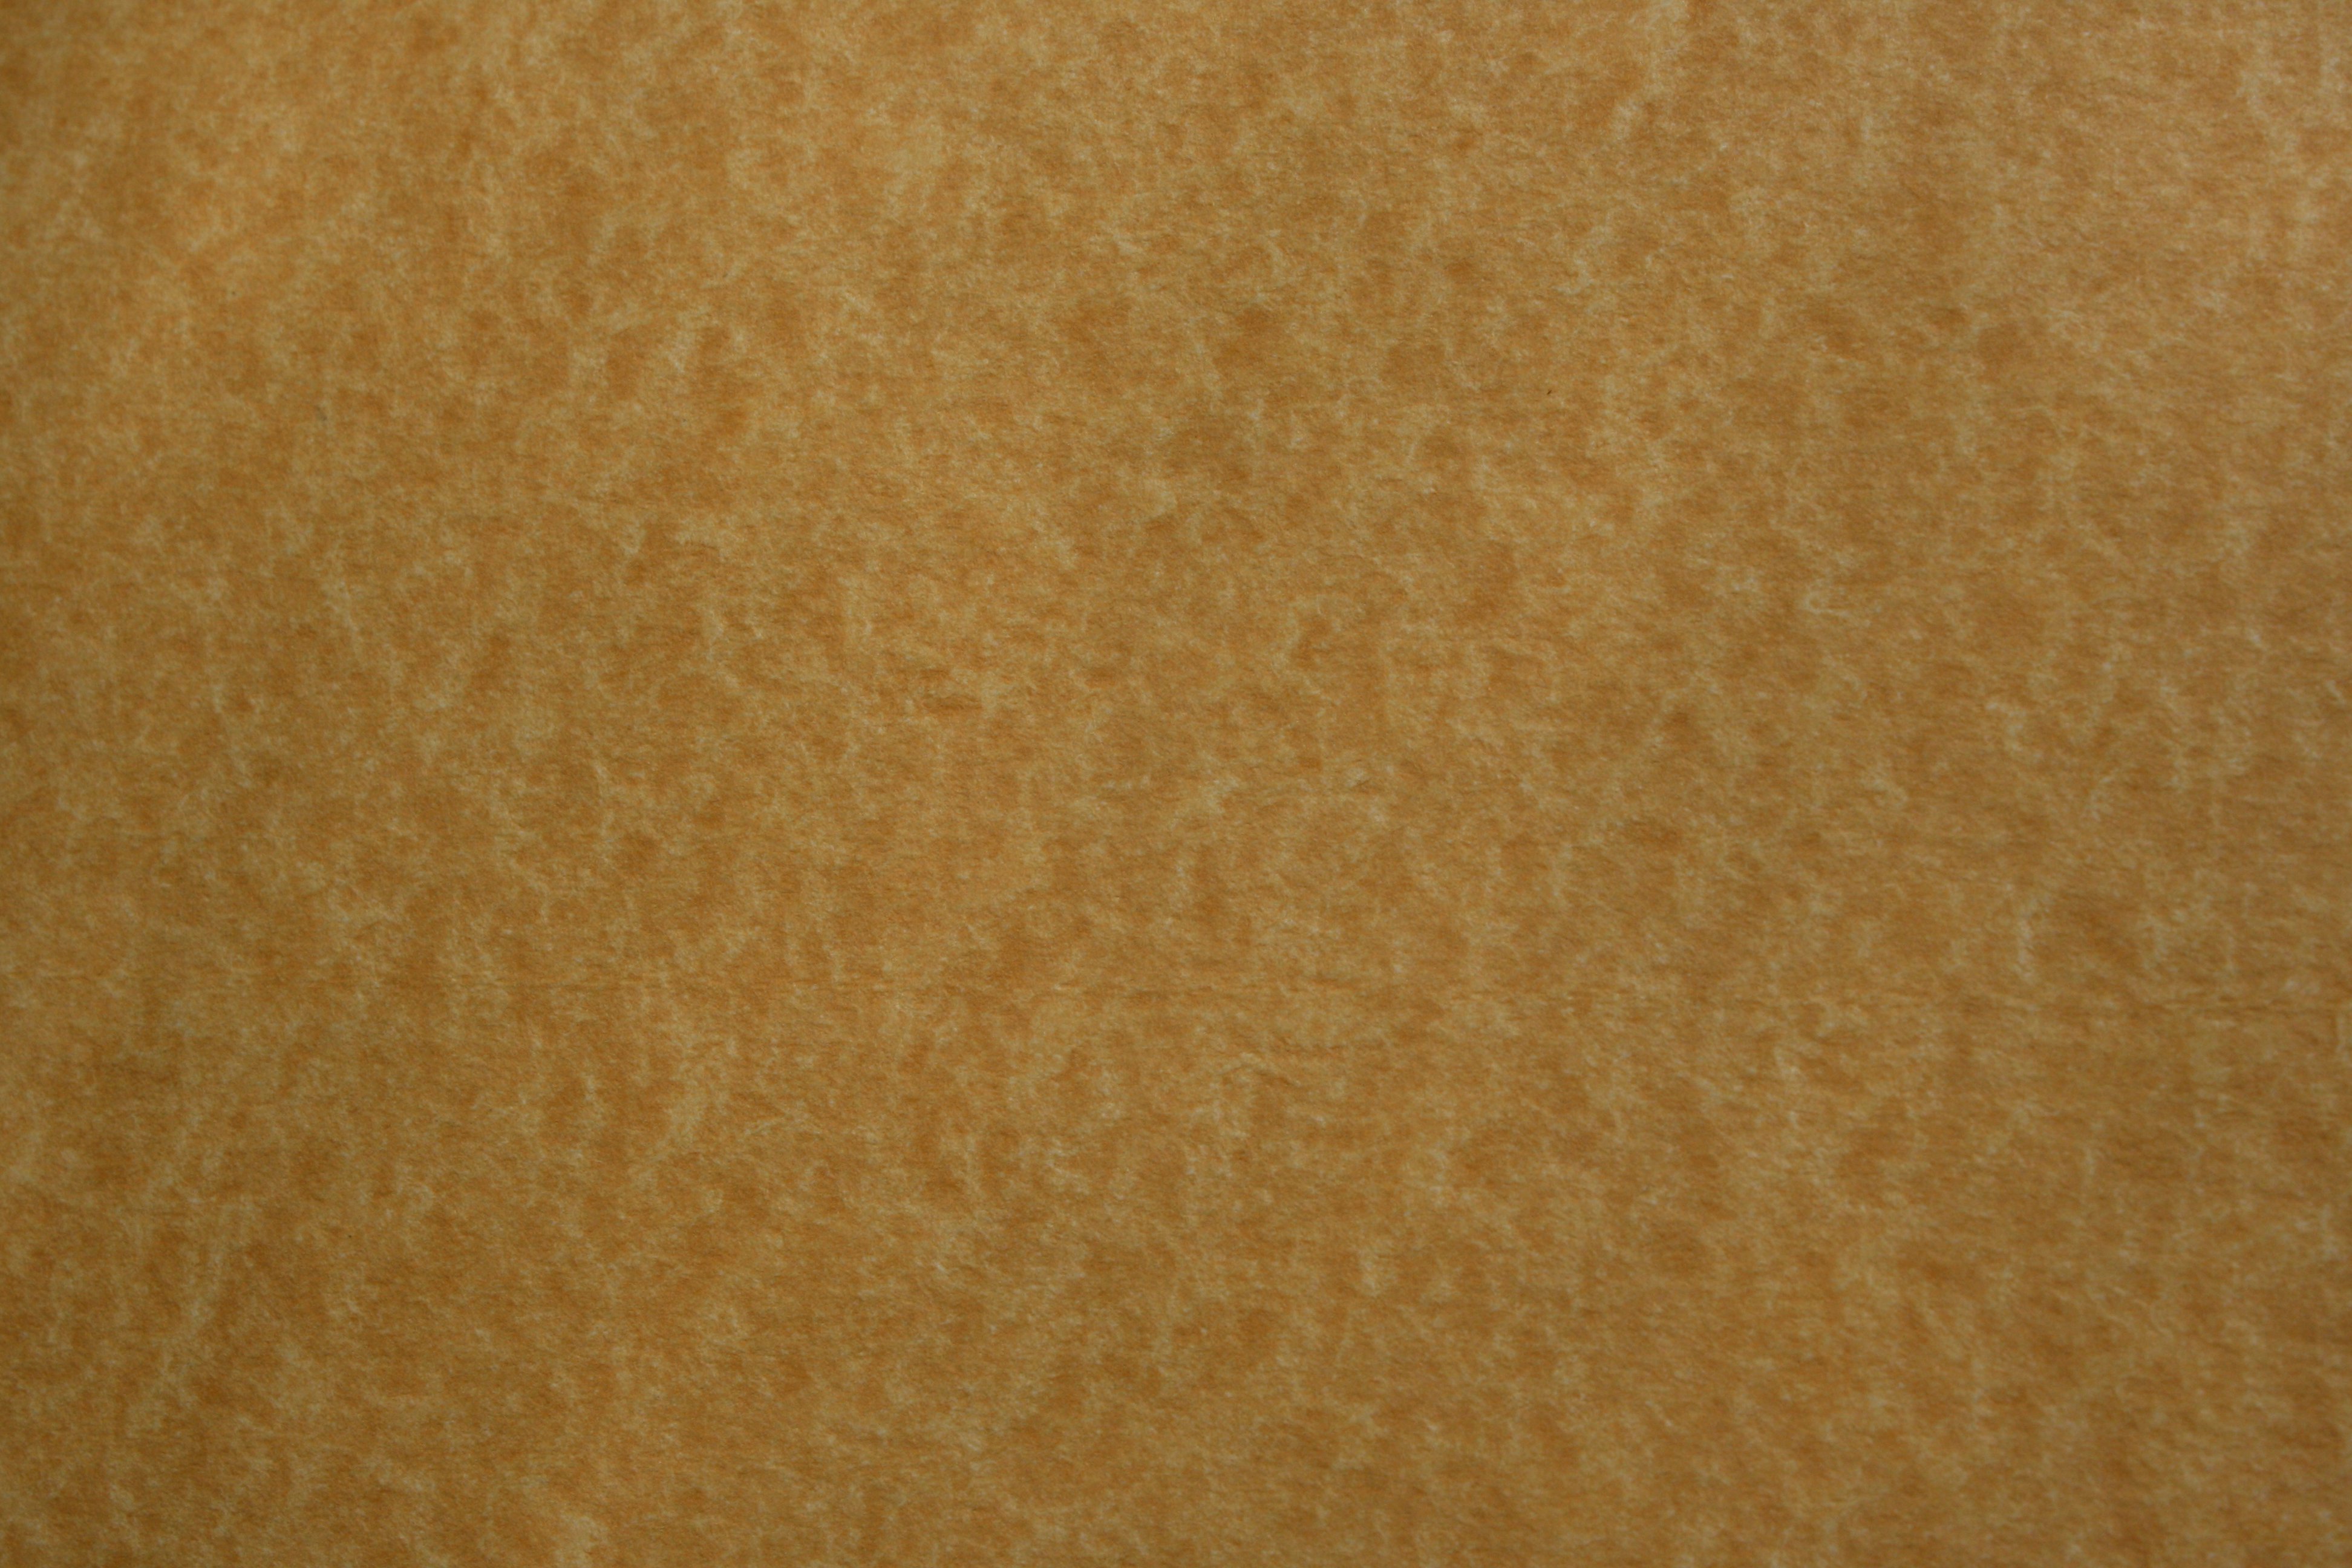 parchment texture